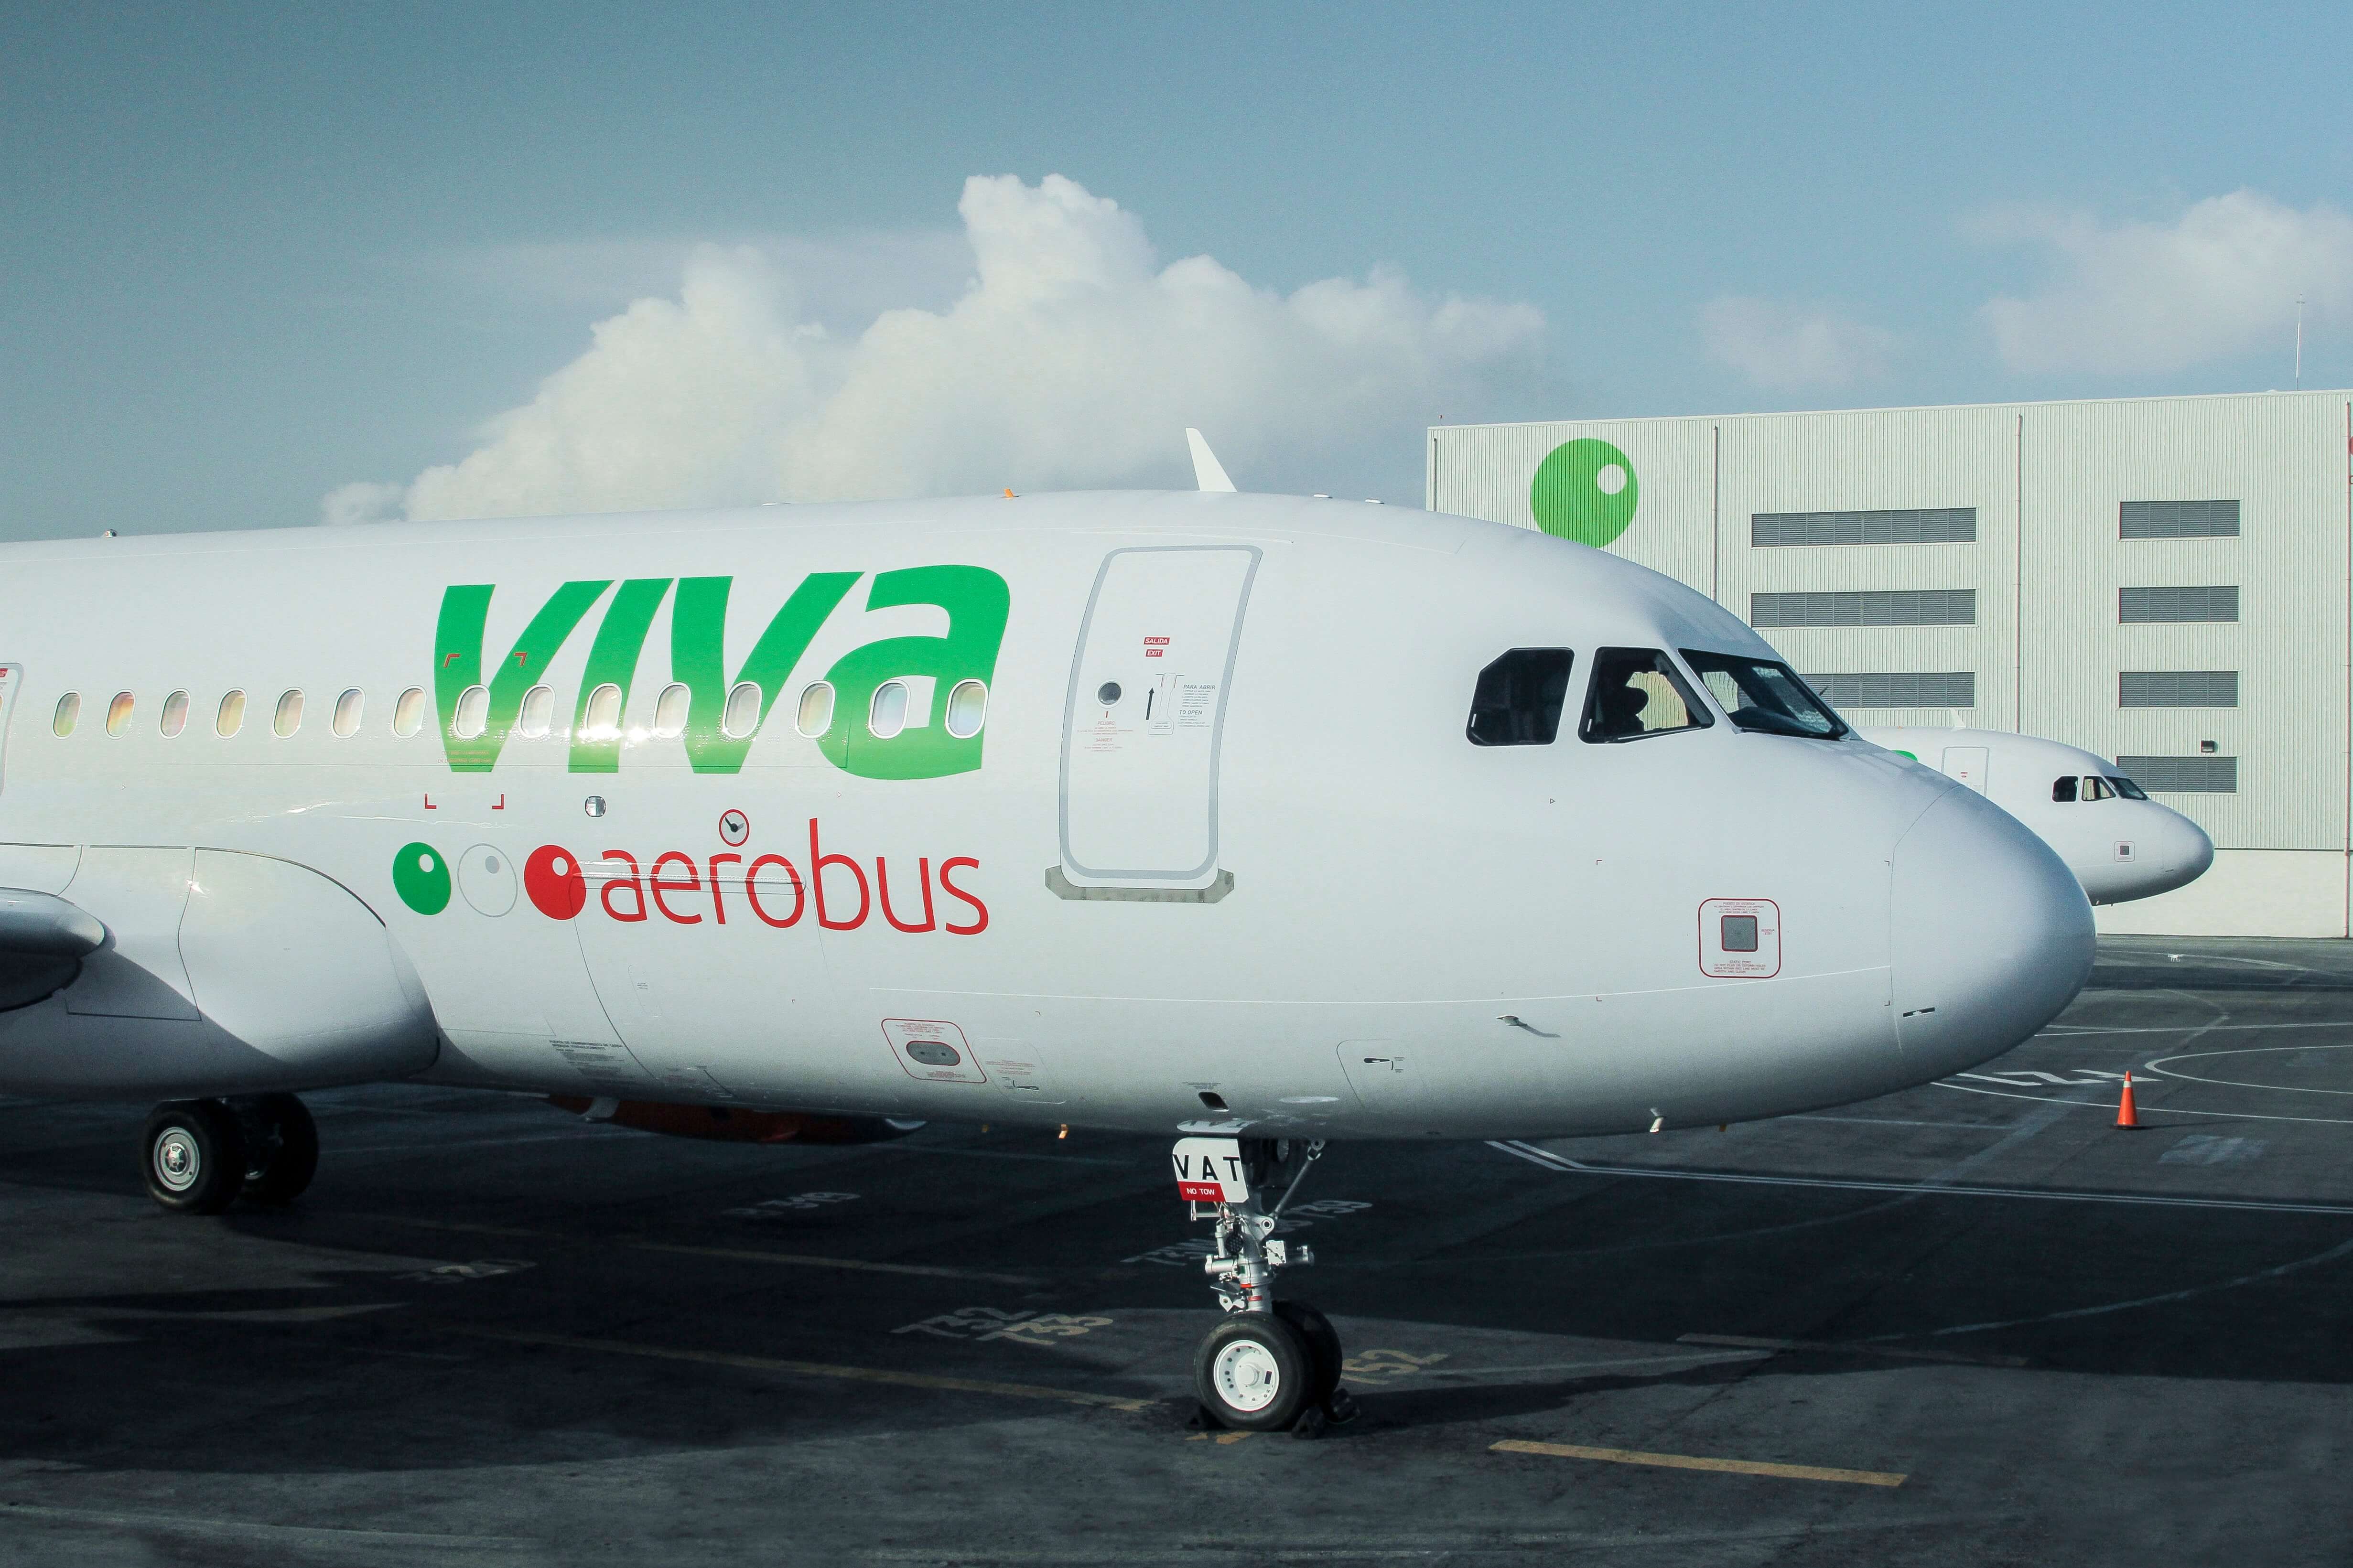 Viva realiza 1,600 vuelos al mes desde MTY